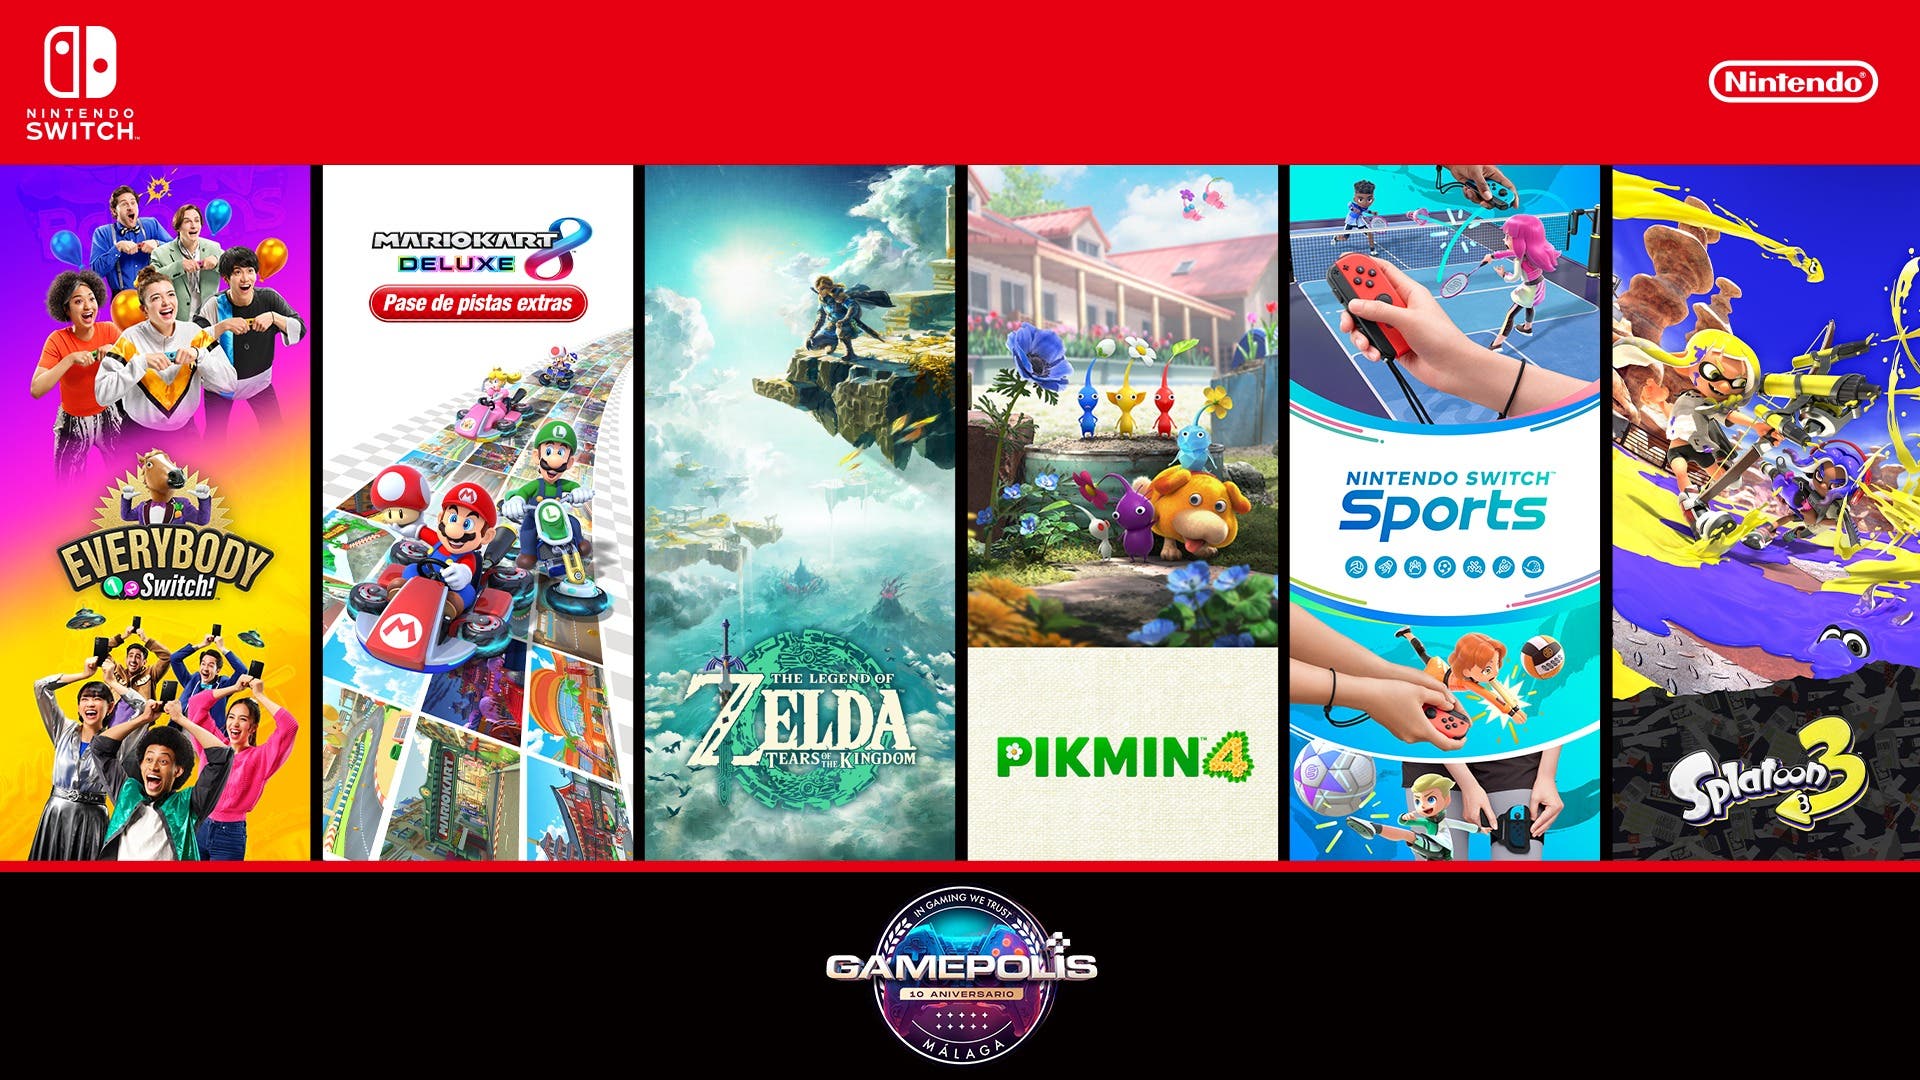 Nintendo detalla sus planes para Gamepolis 2023